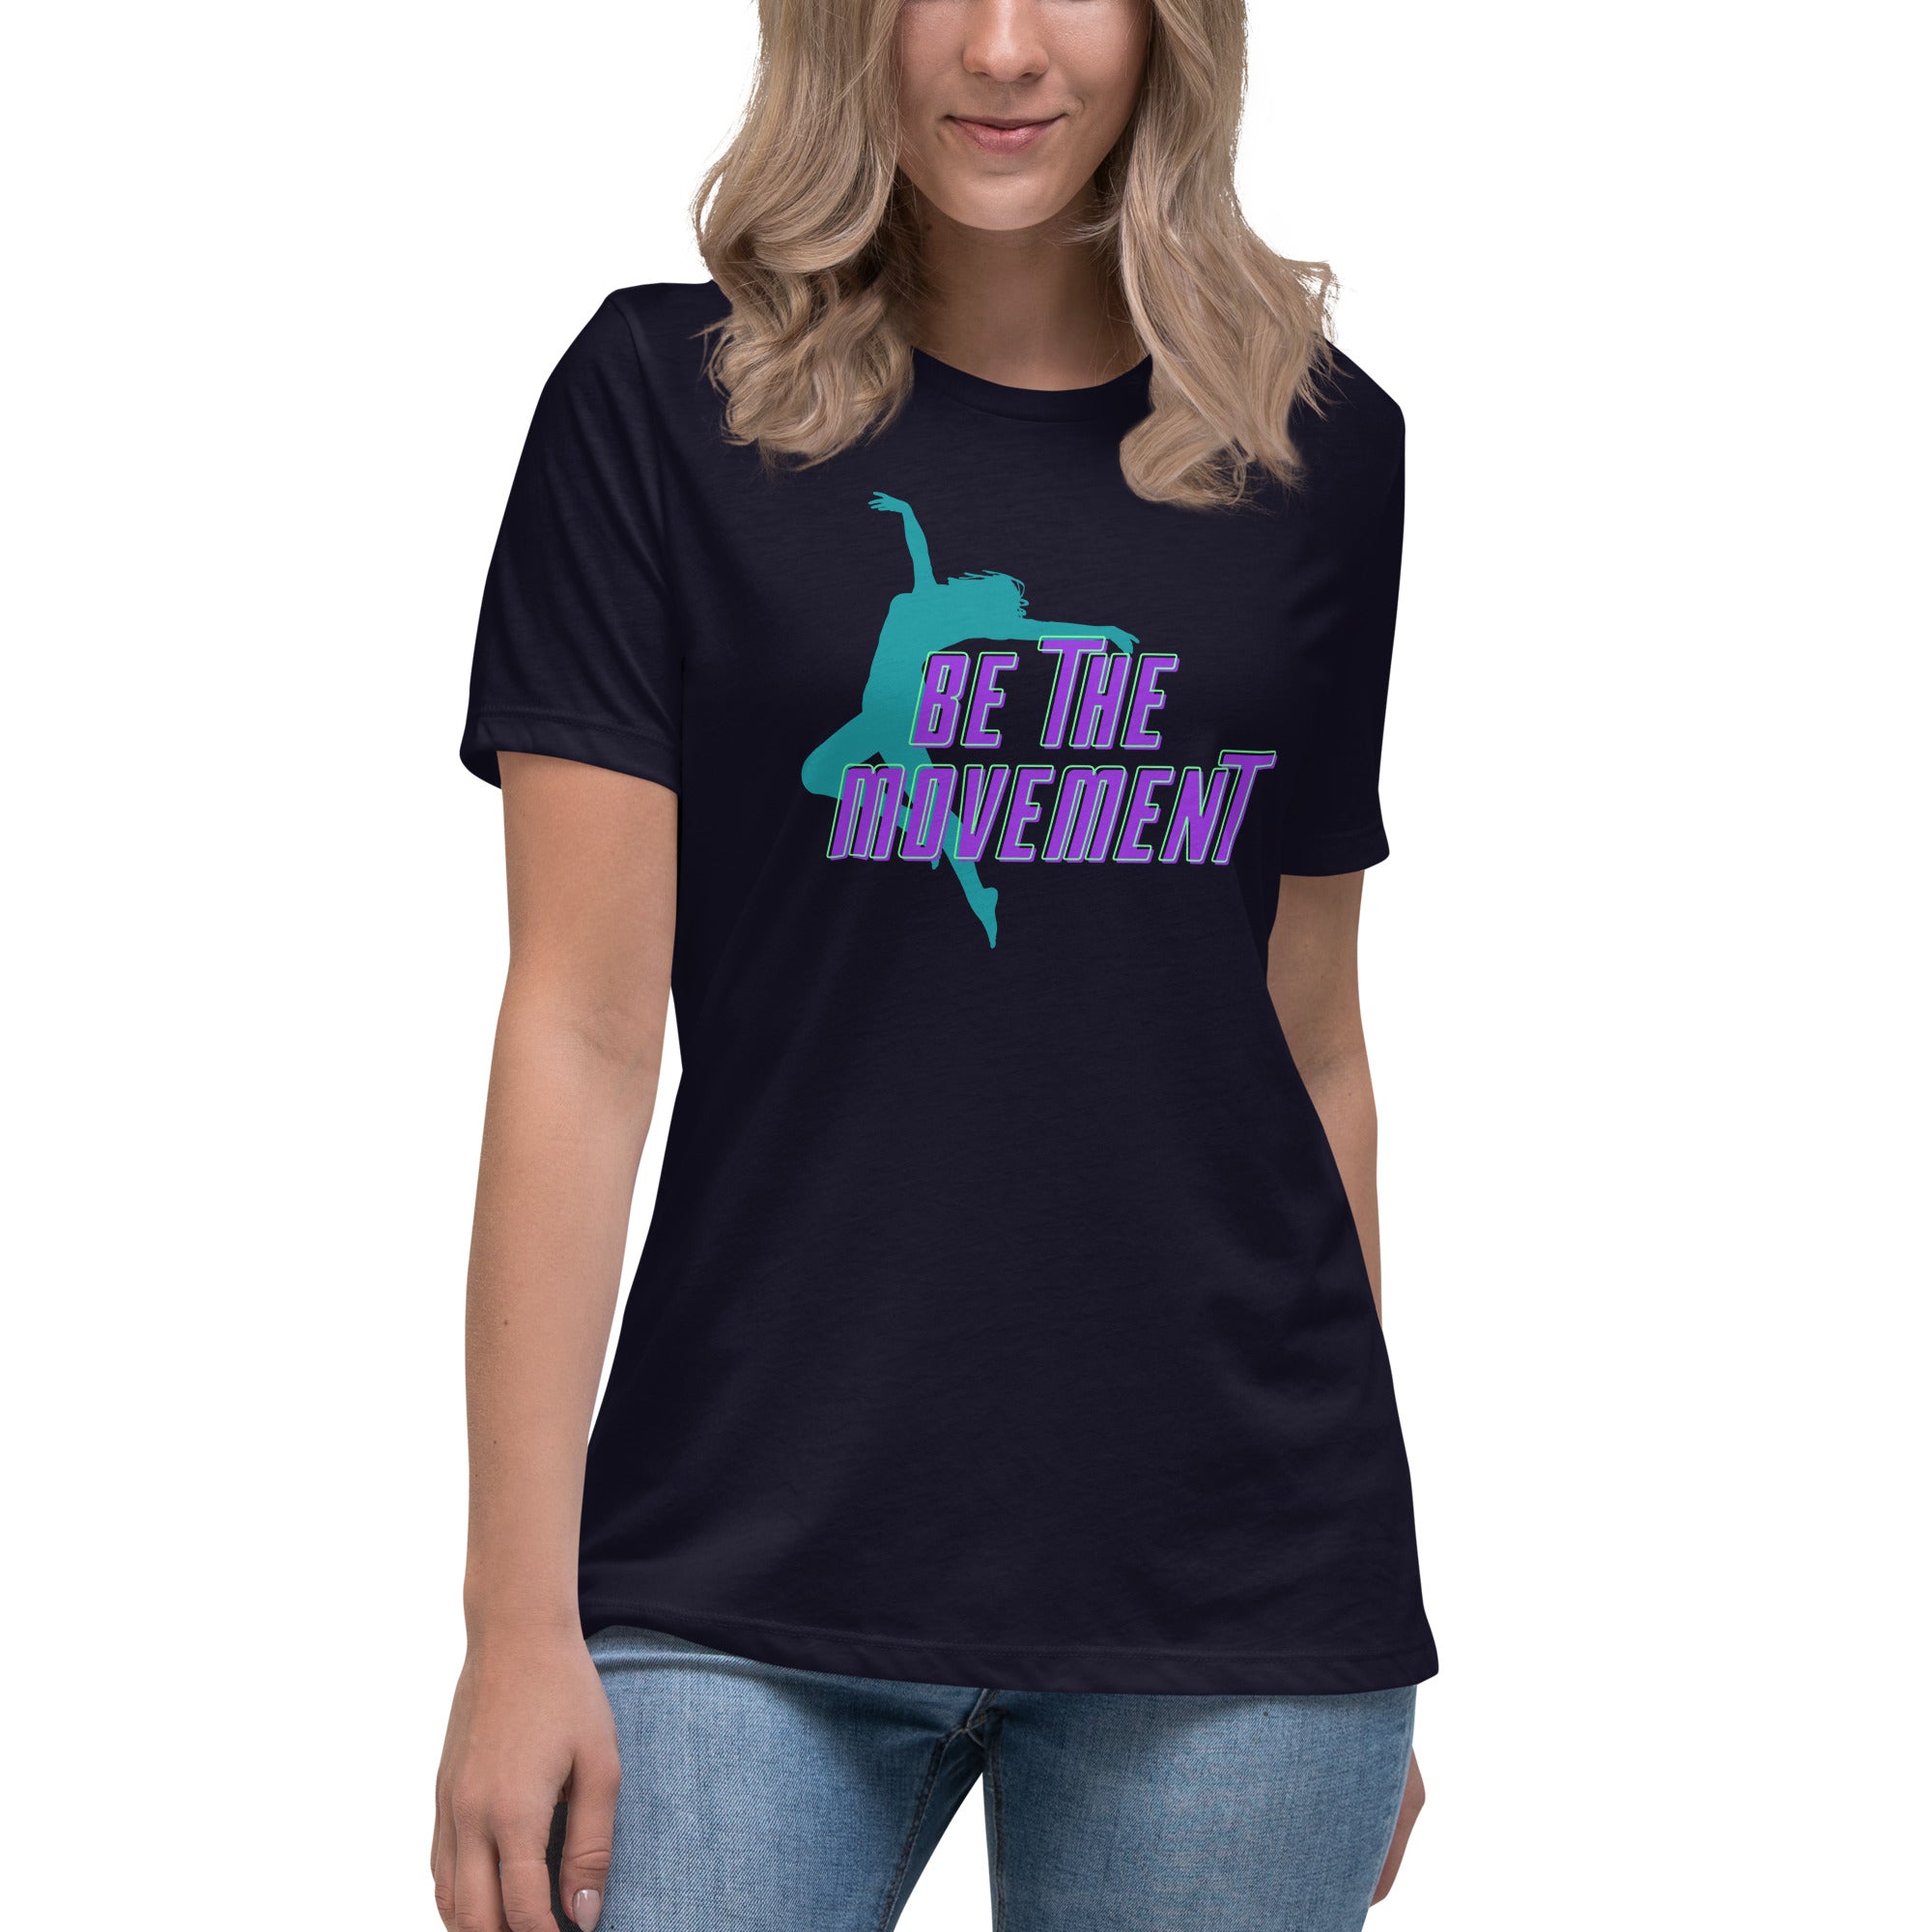 Be The Movement Women's Premium T-Shirt